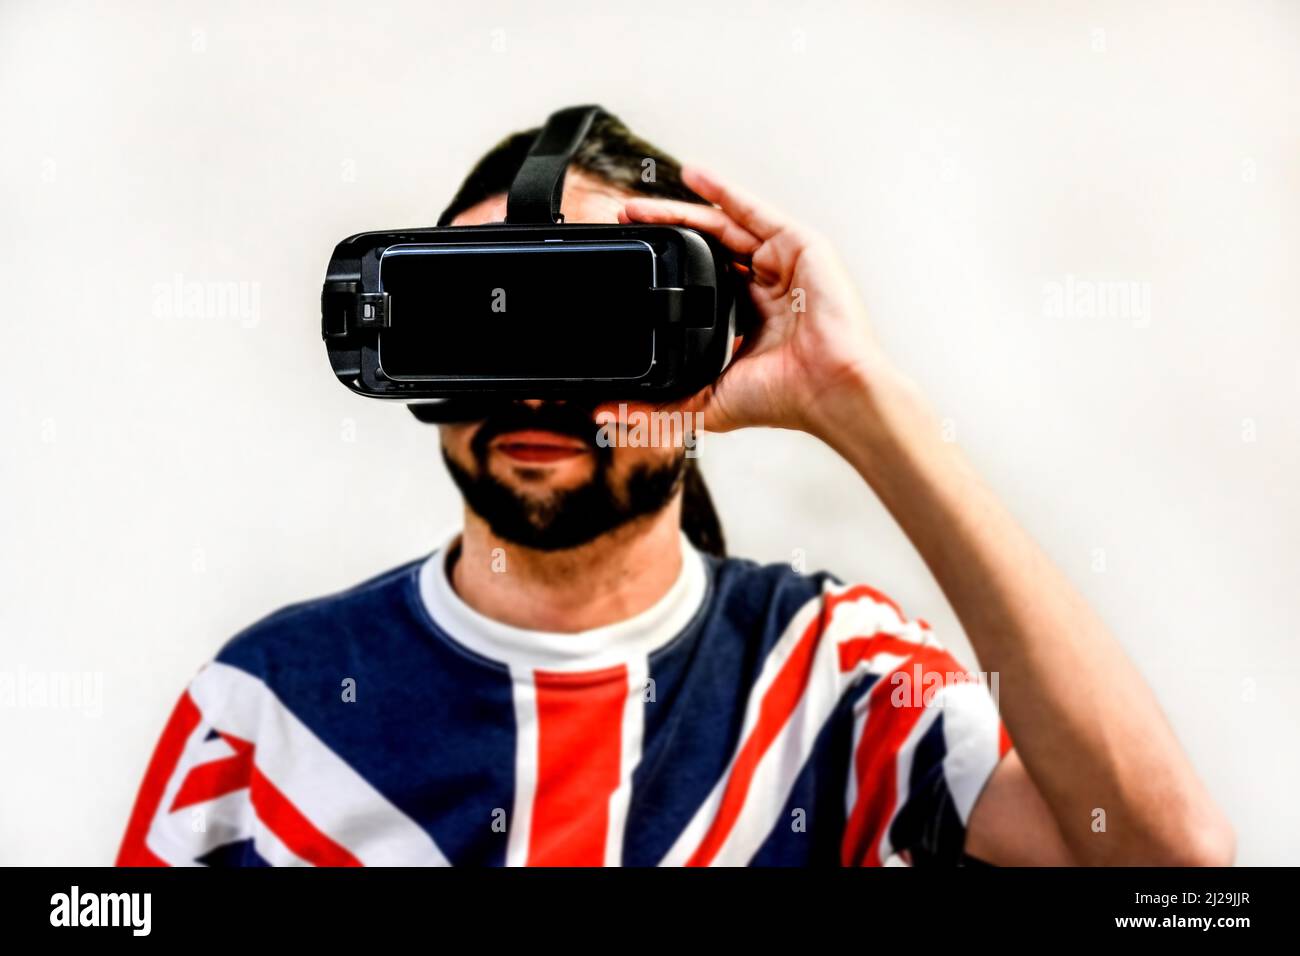 Homme sur fond blanc avec micro-casques de réalité virtuelle en marche, testant la nouvelle technologie VR. Homme avec 4K verres regardant des jeux ou des vidéos Banque D'Images